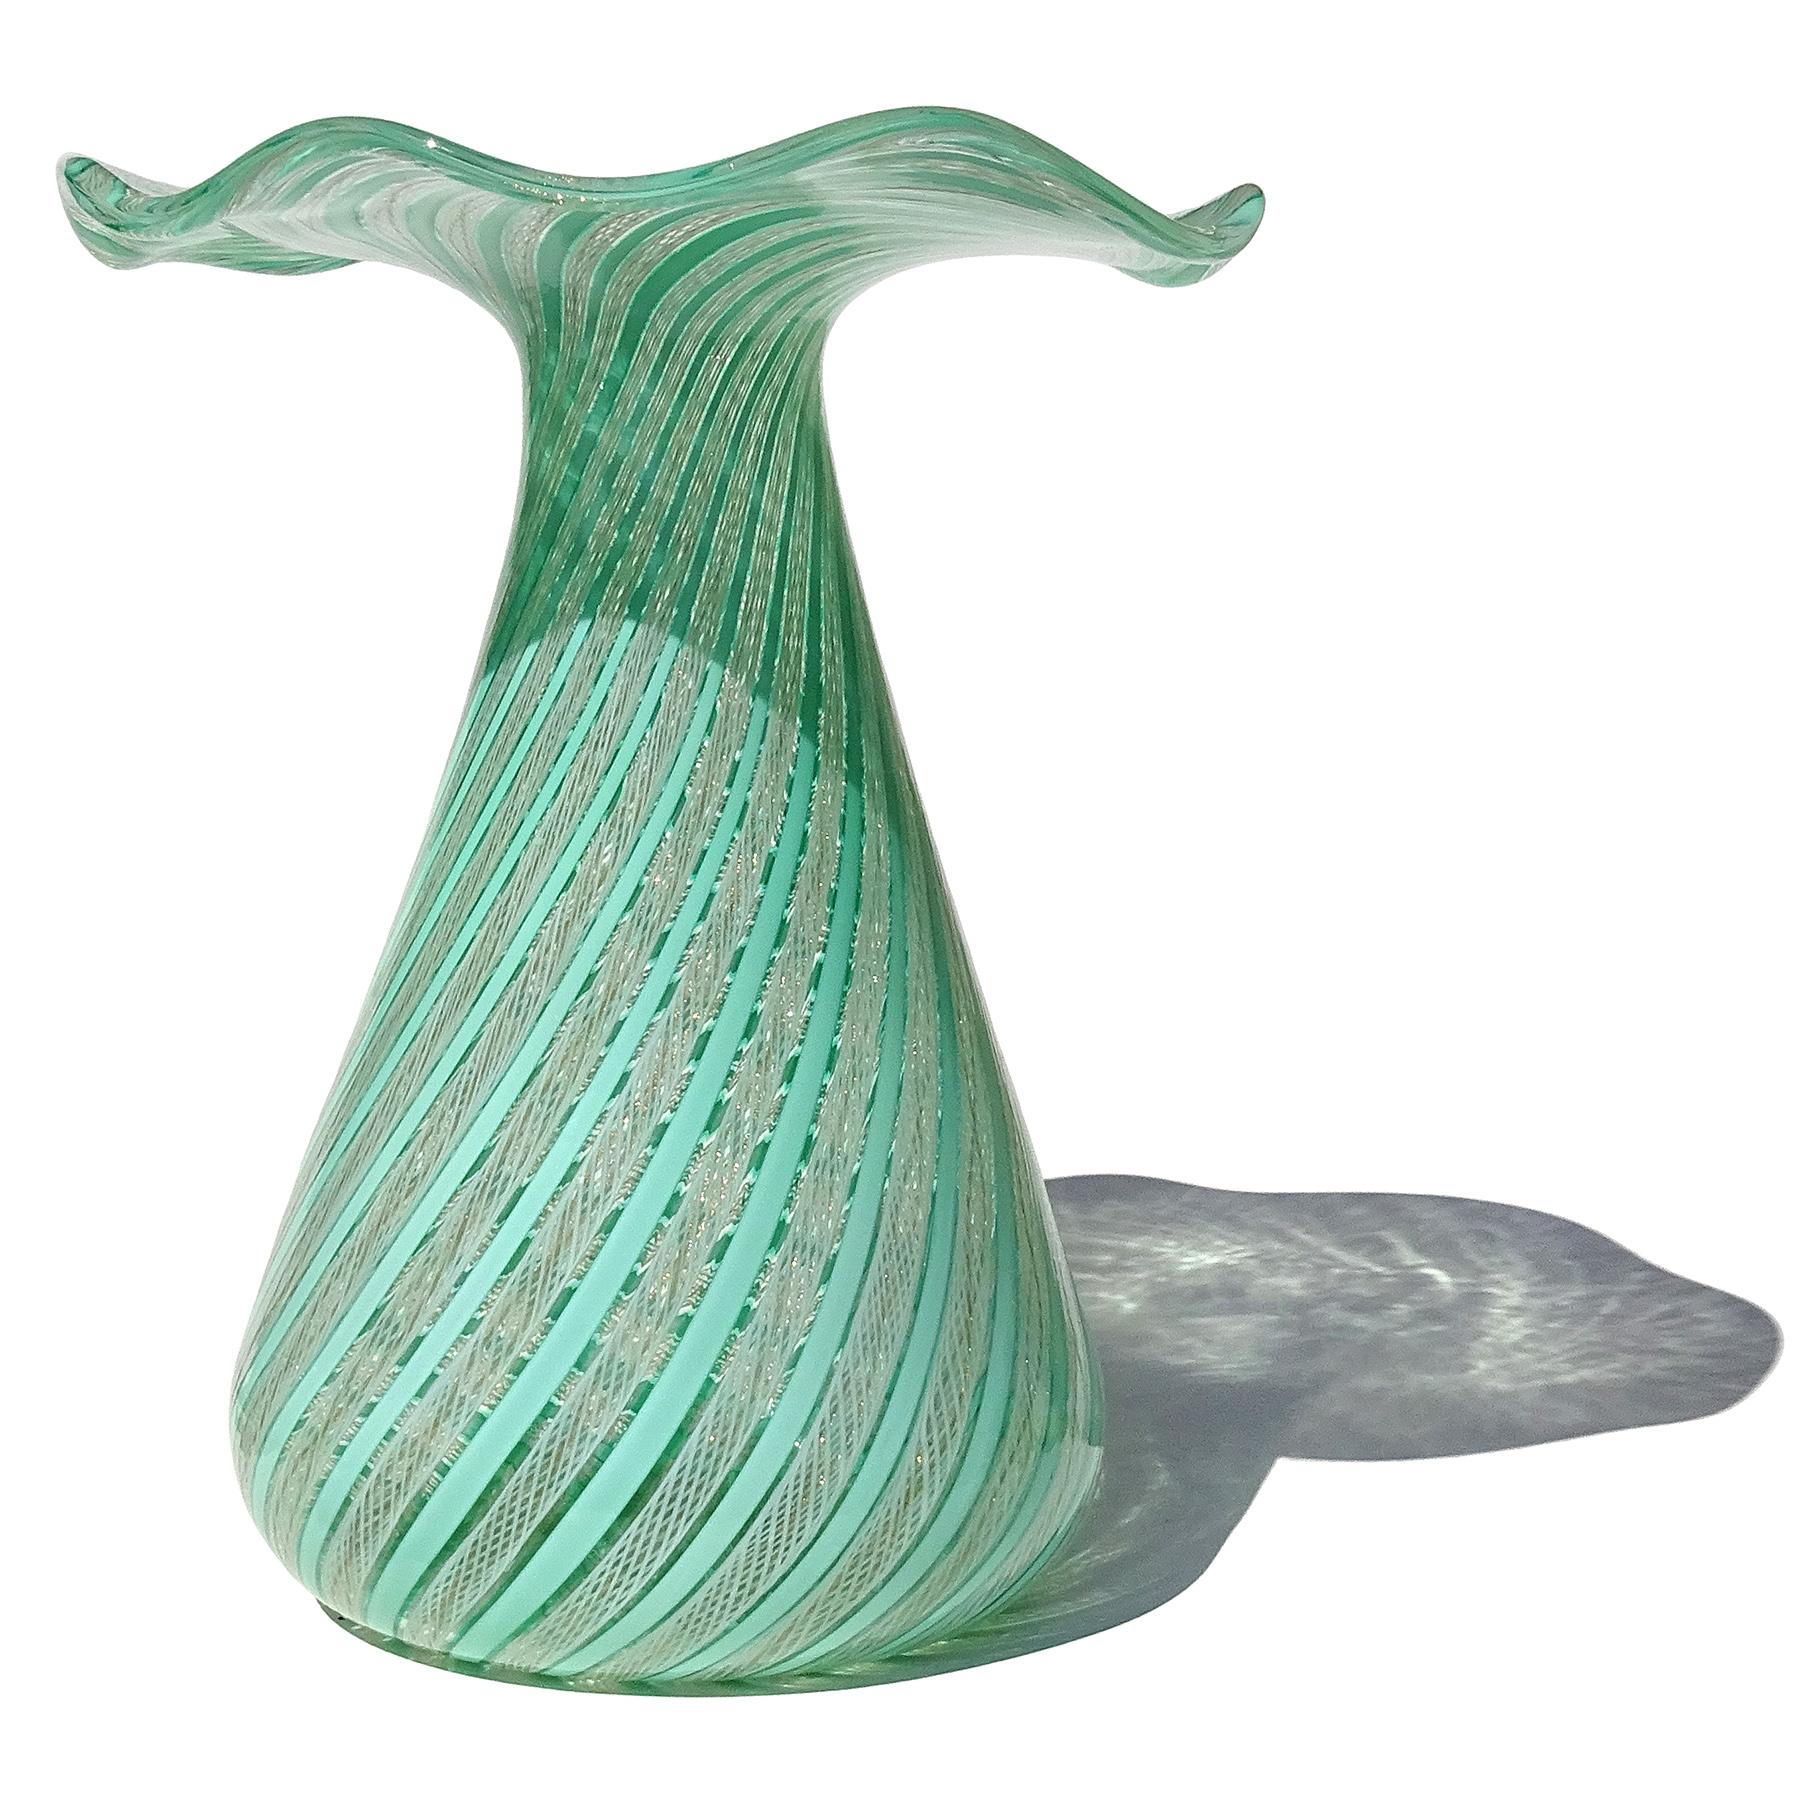 Magnifique et grand vase vintage en verre soufflé à la main de Murano, vert, blanc et rubans d'aventurine Zanfirico, en verre d'art italien sculptural à bord évasé. Créé à la manière de la société Dino Martens et de la société Fratelli Toso. Le vase